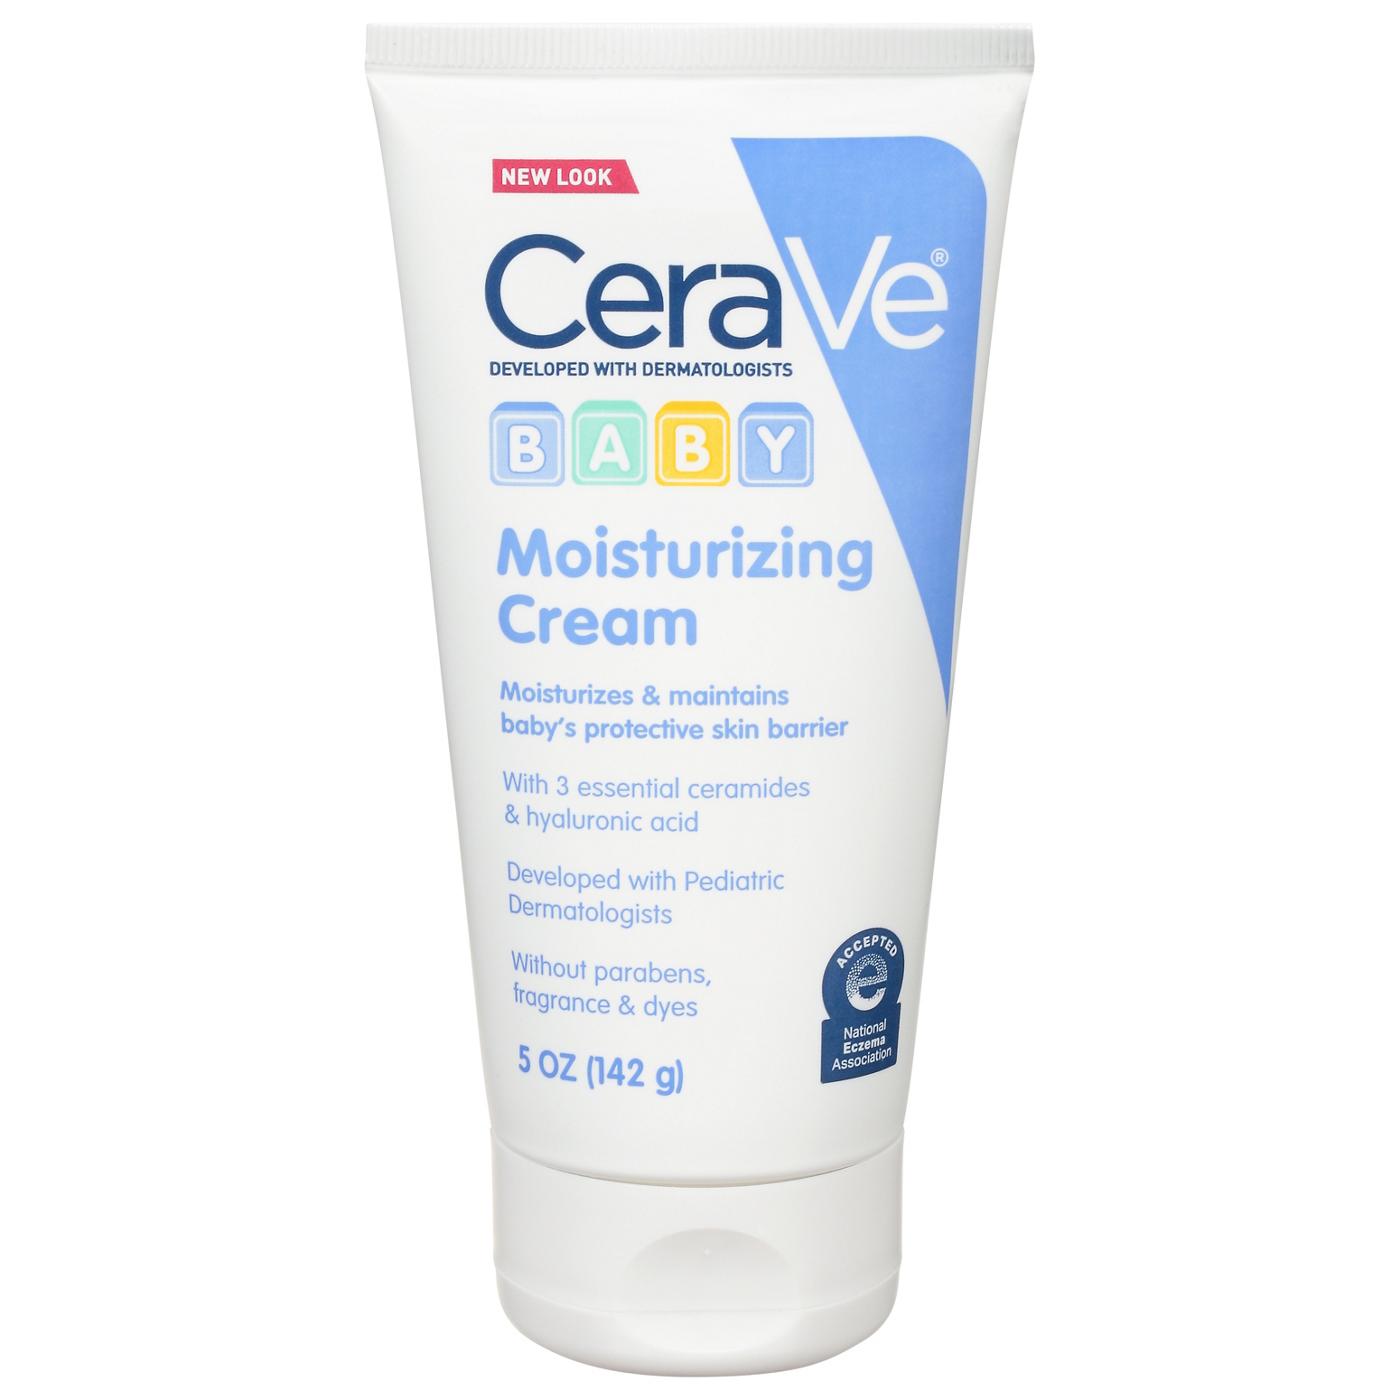 CeraVe Baby Moisturizing Cream; image 1 of 3